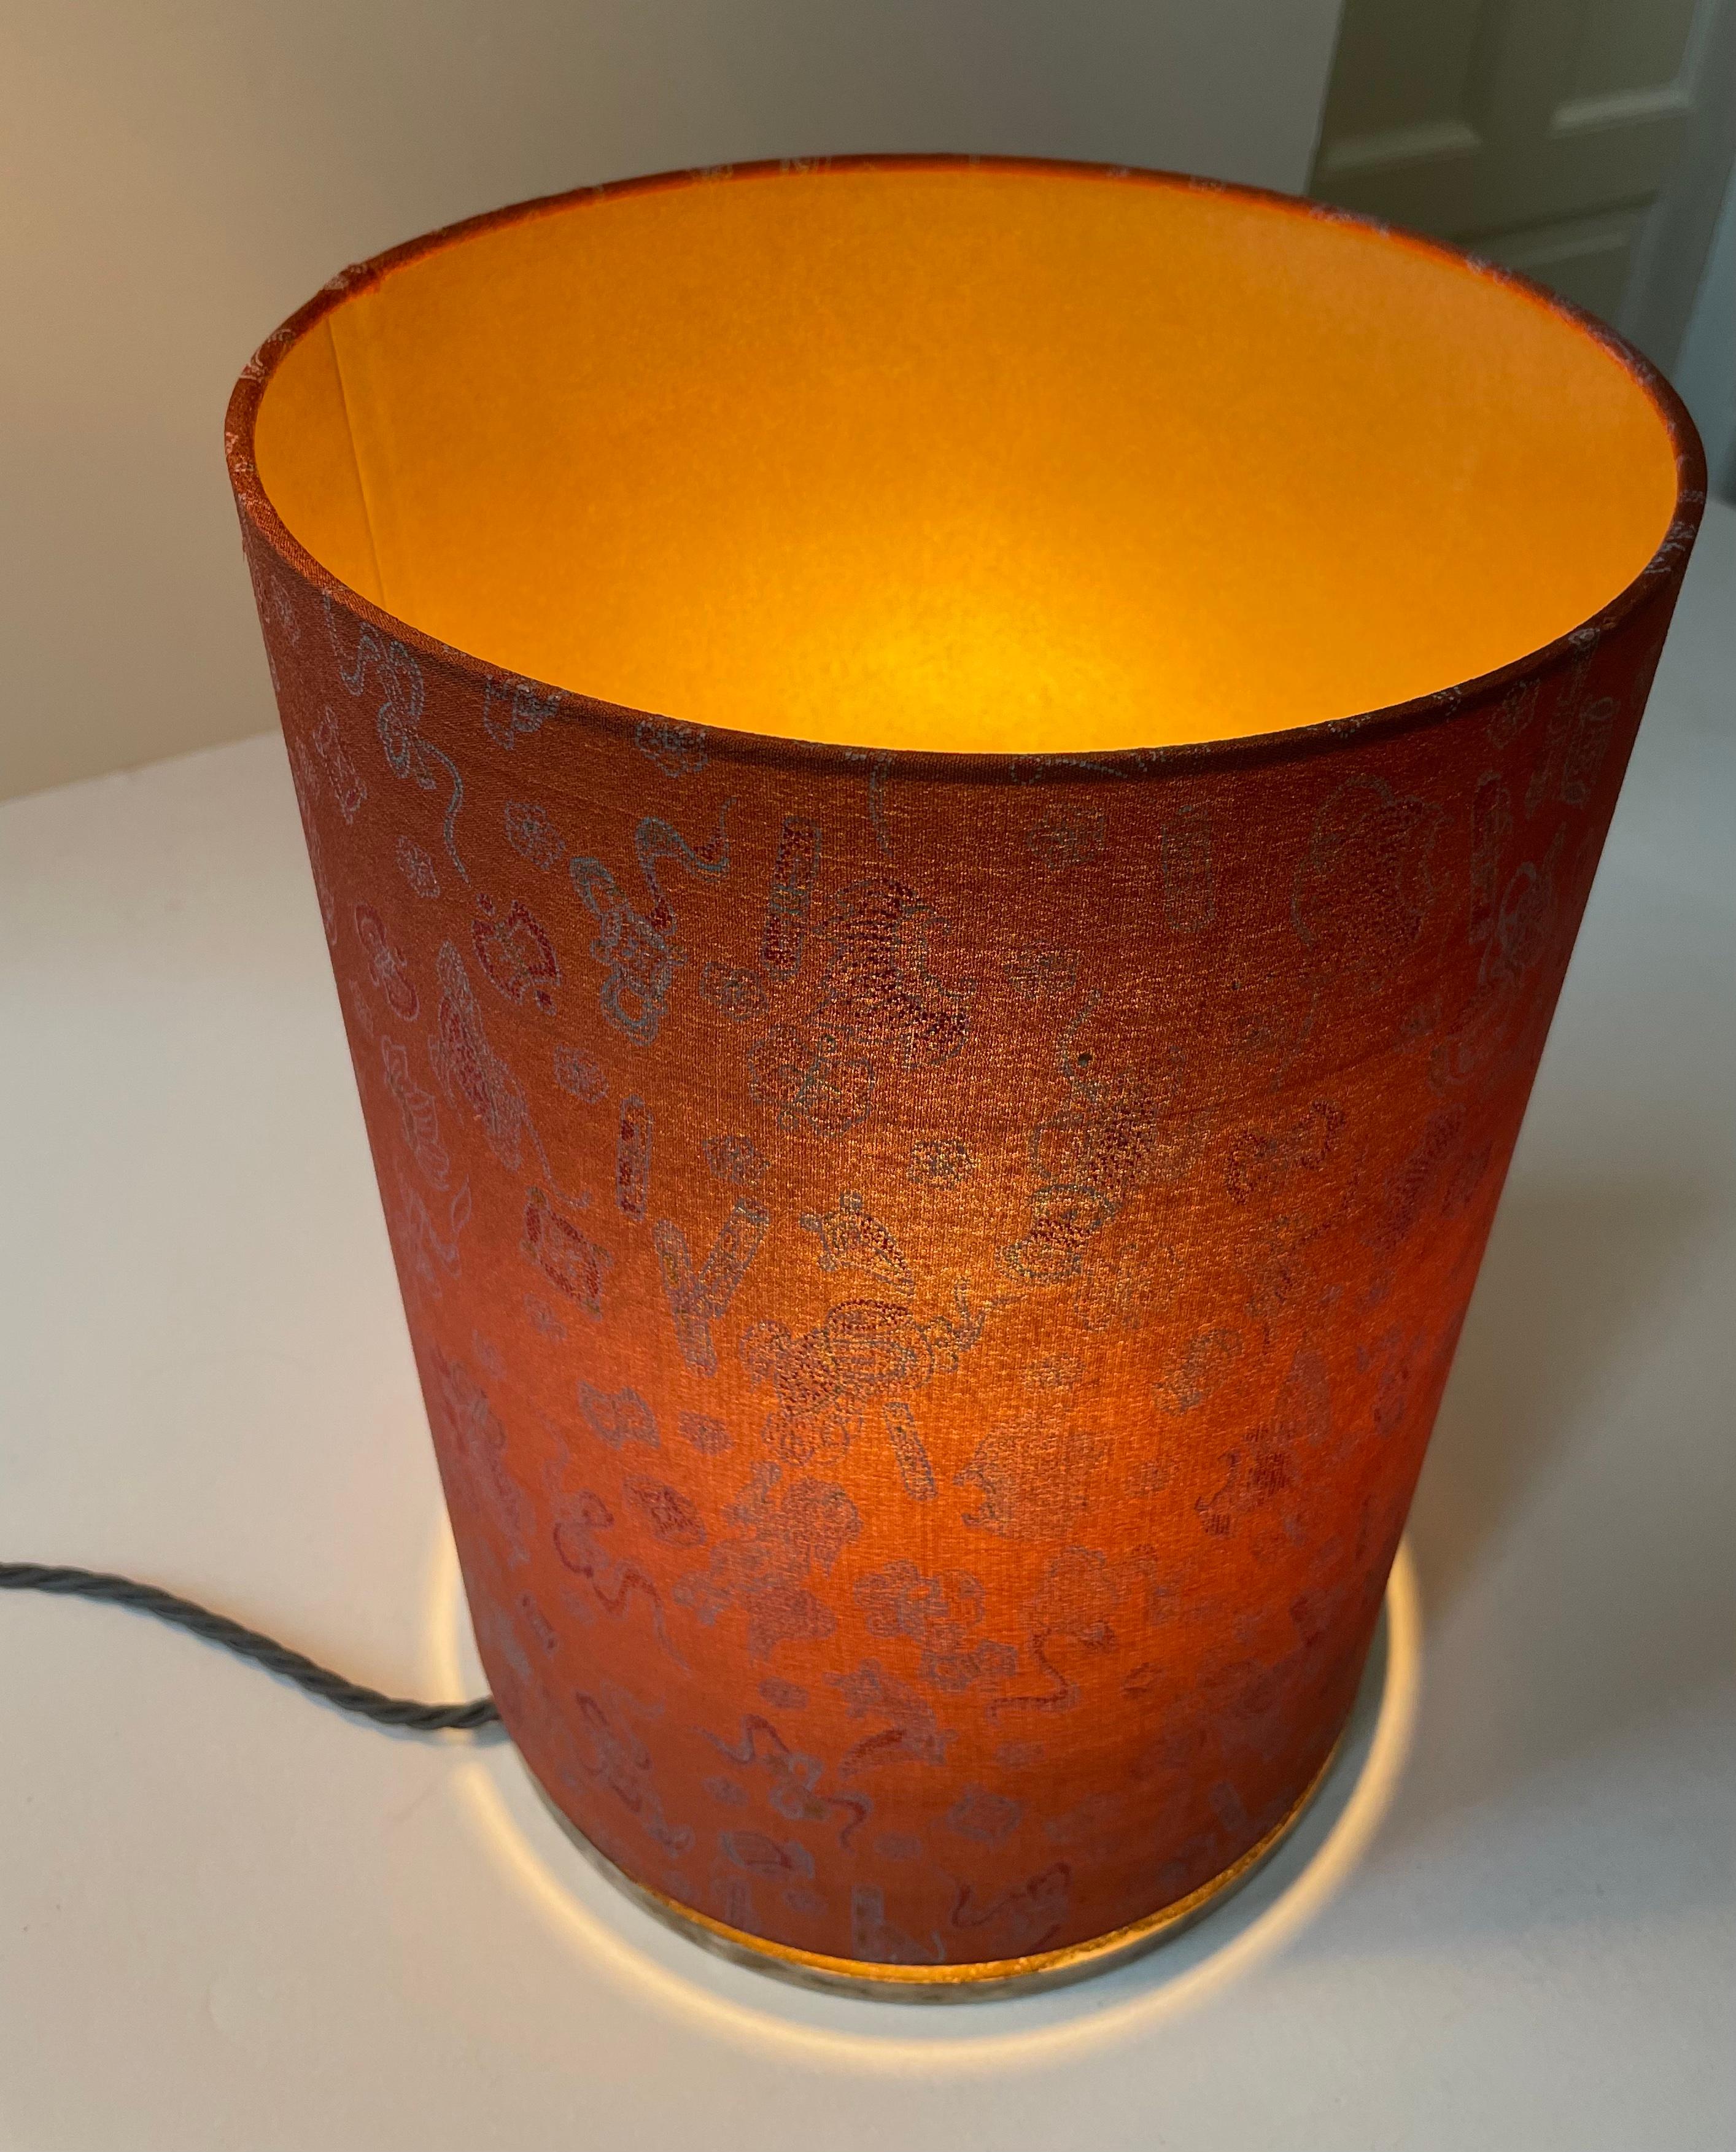 Dies ist eines von mehreren Lichtobjekten, die von Geroma Löw x Atelier Livia
- jedes Objekt ist einzigartig.
Die Rückseite des Lampenschirms wurde mit einer speziellen Technik goldfarben eingefärbt, damit das Licht durchscheinen kann.
Dieser